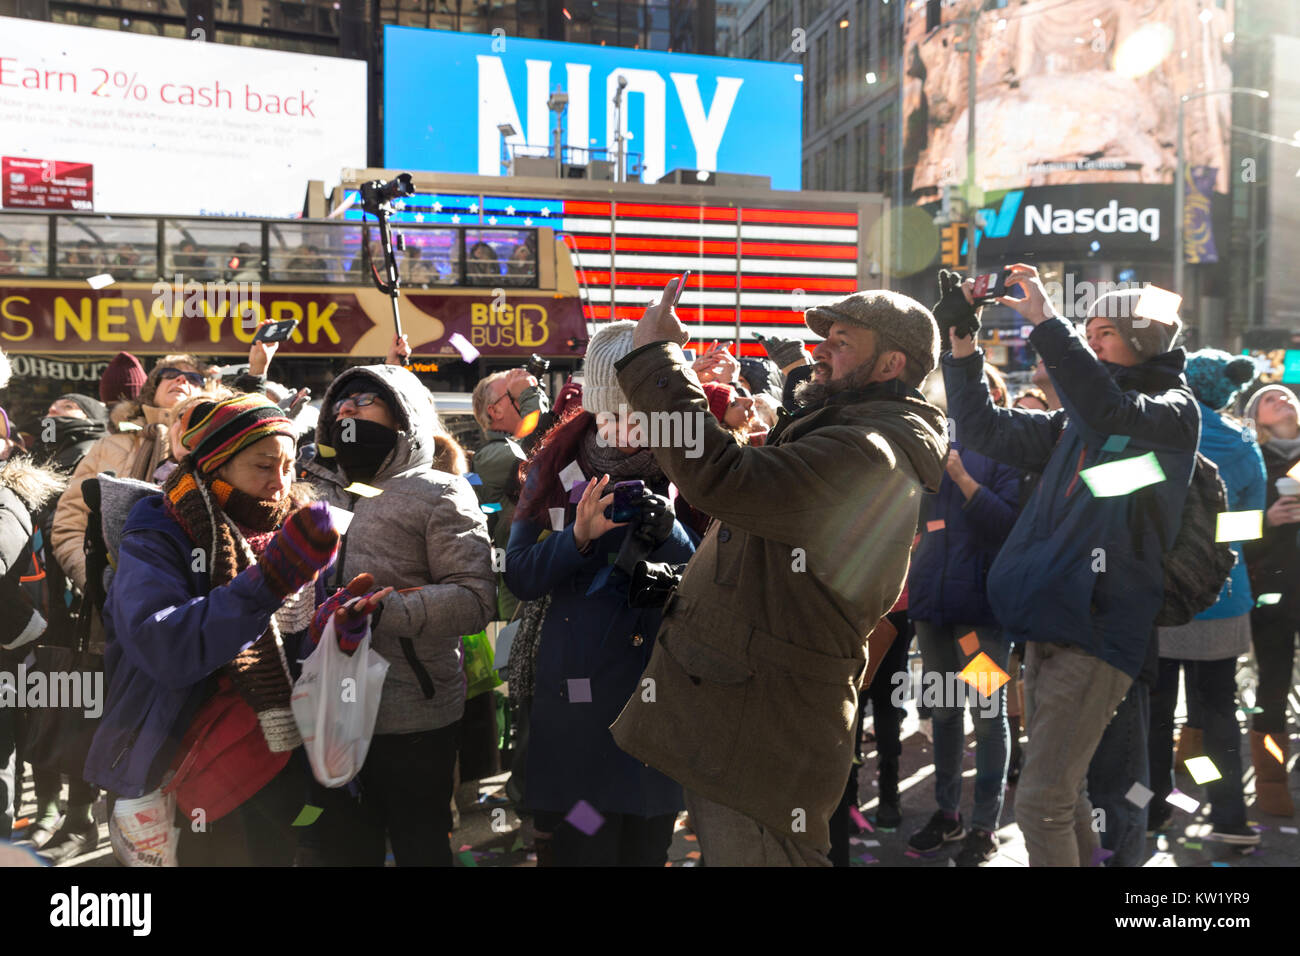 New York, NY - 29. Dezember 2017: Nachtschwärmer Bilder während der Prüfung der Kreditwürdigkeit von Konfetti auf dem Times Square für neues Jahr Feier nehmen von oben aus Hard Rock Cafe Festzelt Stockfoto